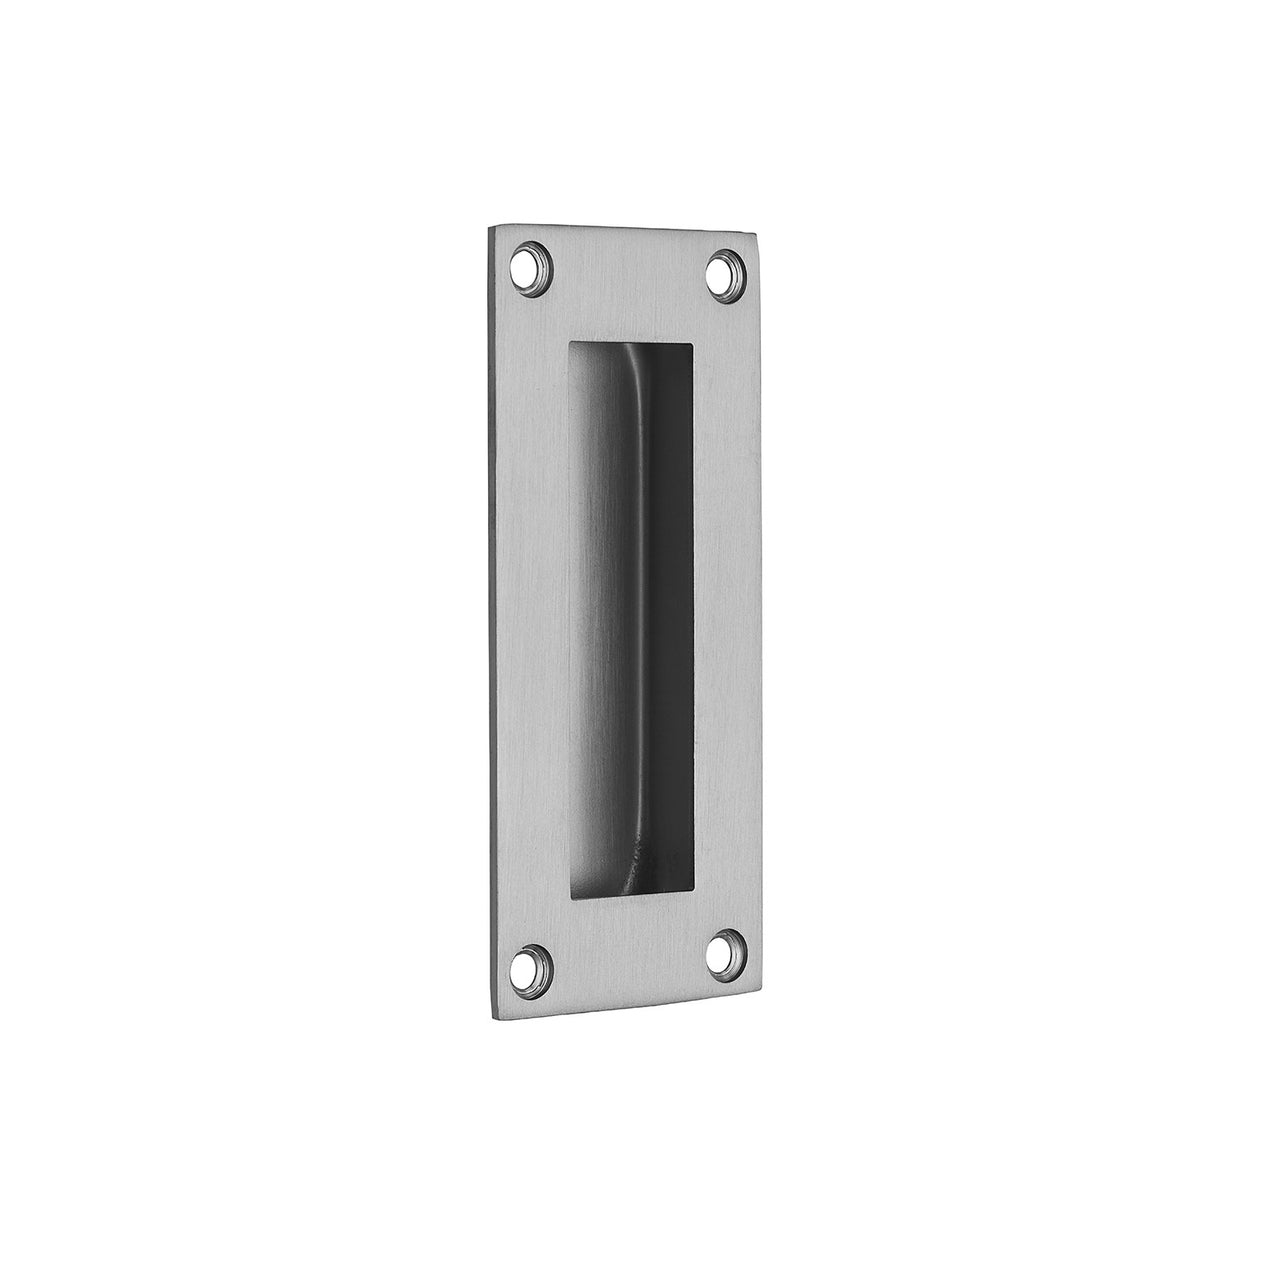 Stainless Steel Pocket/Sliding Door Rectangular Flush Pull Handle - 102mm x 45mm